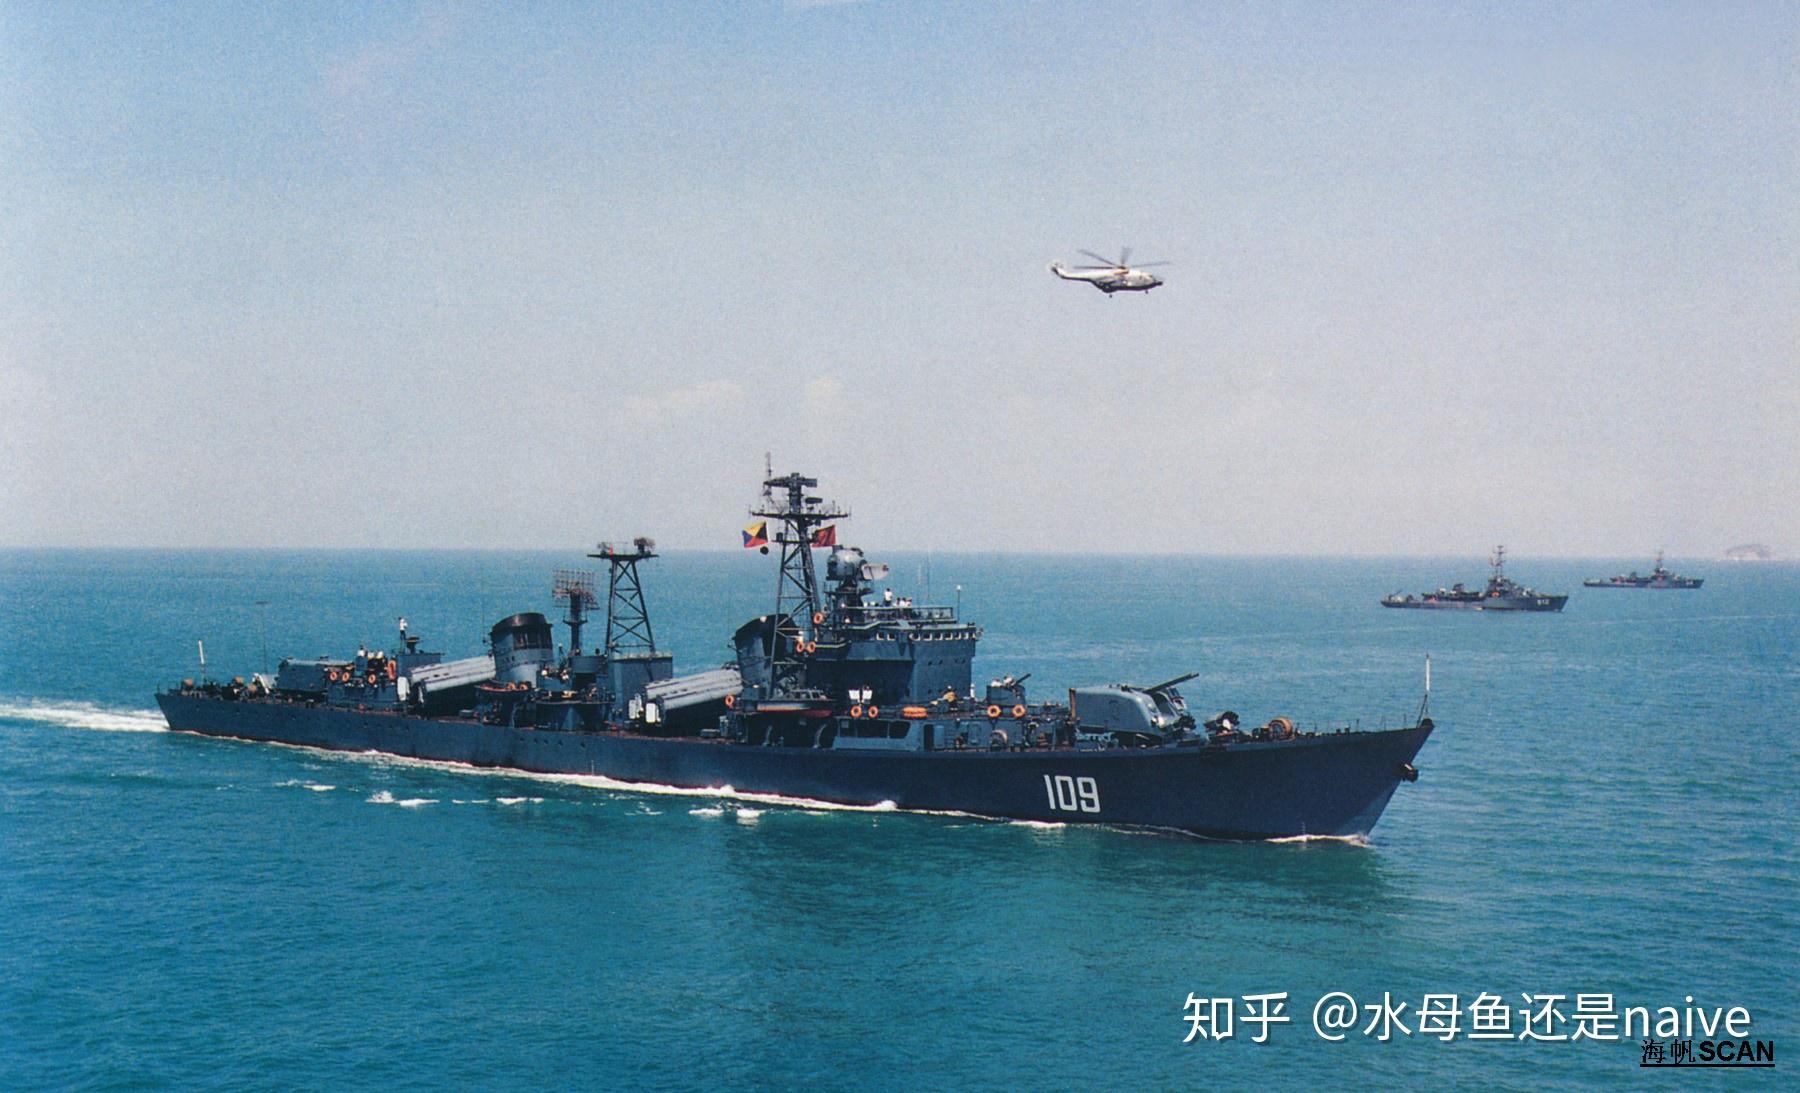 1986年8月1日,海军北海舰队某驱逐舰支队109舰被命名为开封舰,是为